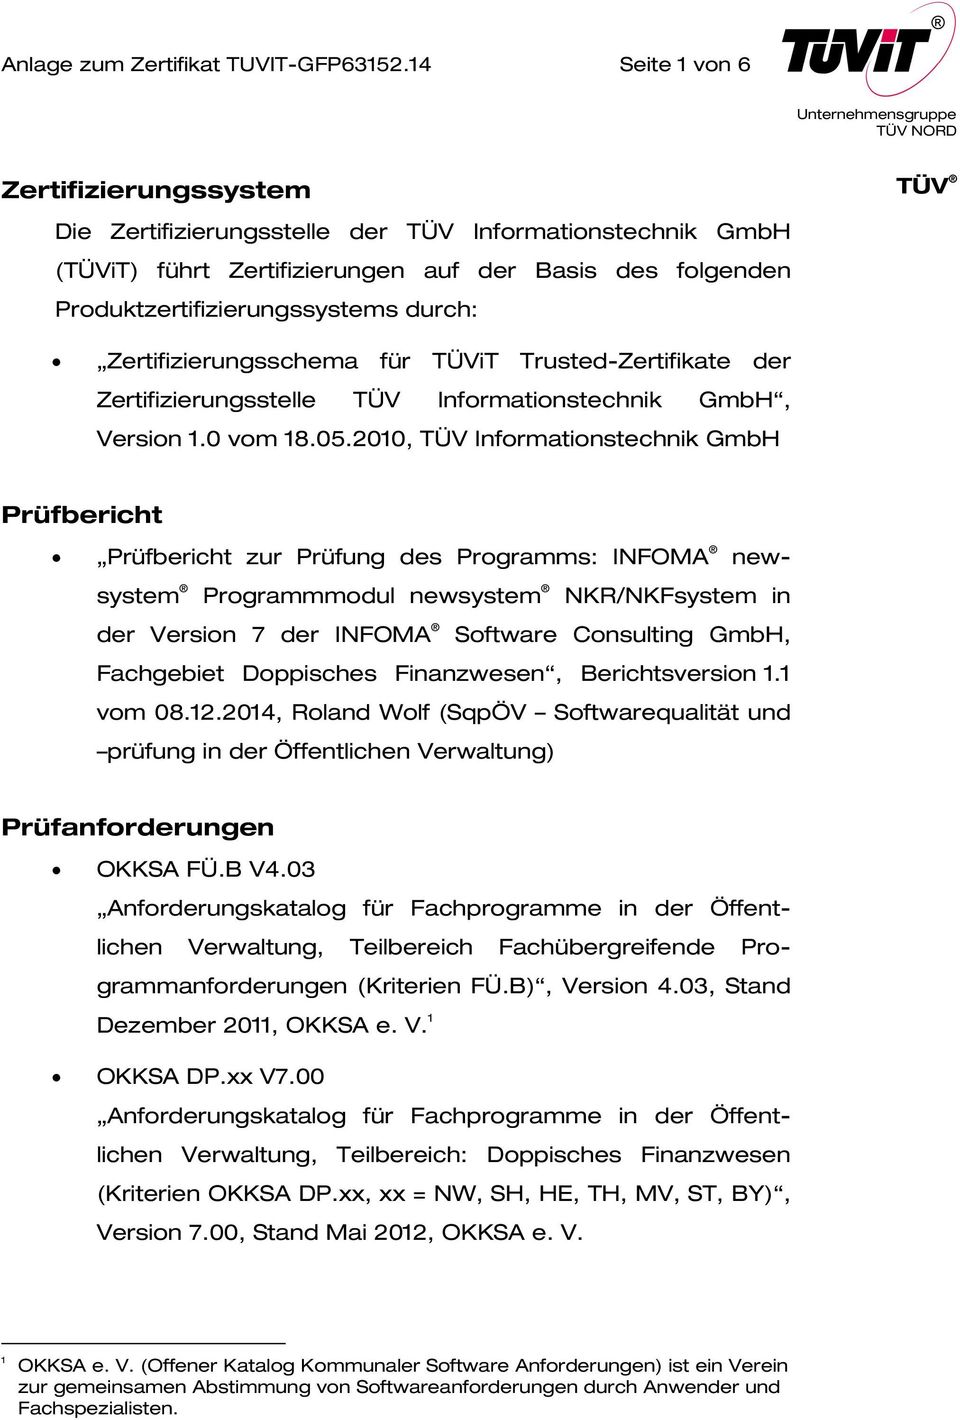 Zertifizierungsschema für TÜViT Trusted-Zertifikate der Zertifizierungsstelle TÜV Informationstechnik GmbH, Version 1.0 vom 18.05.